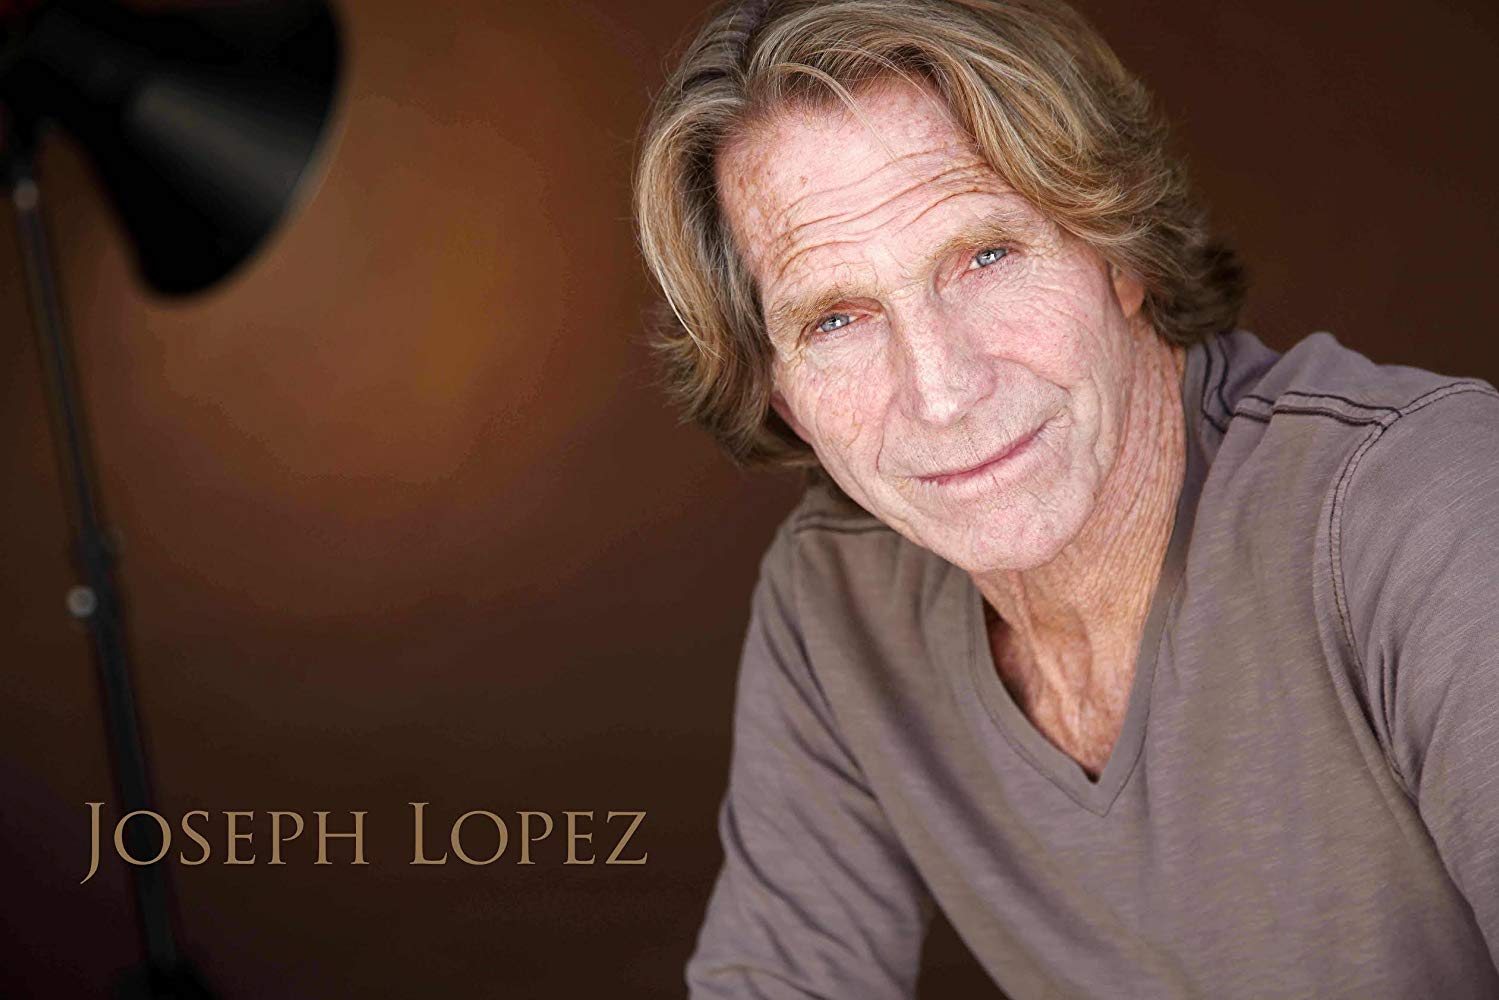 Joseph Lopez